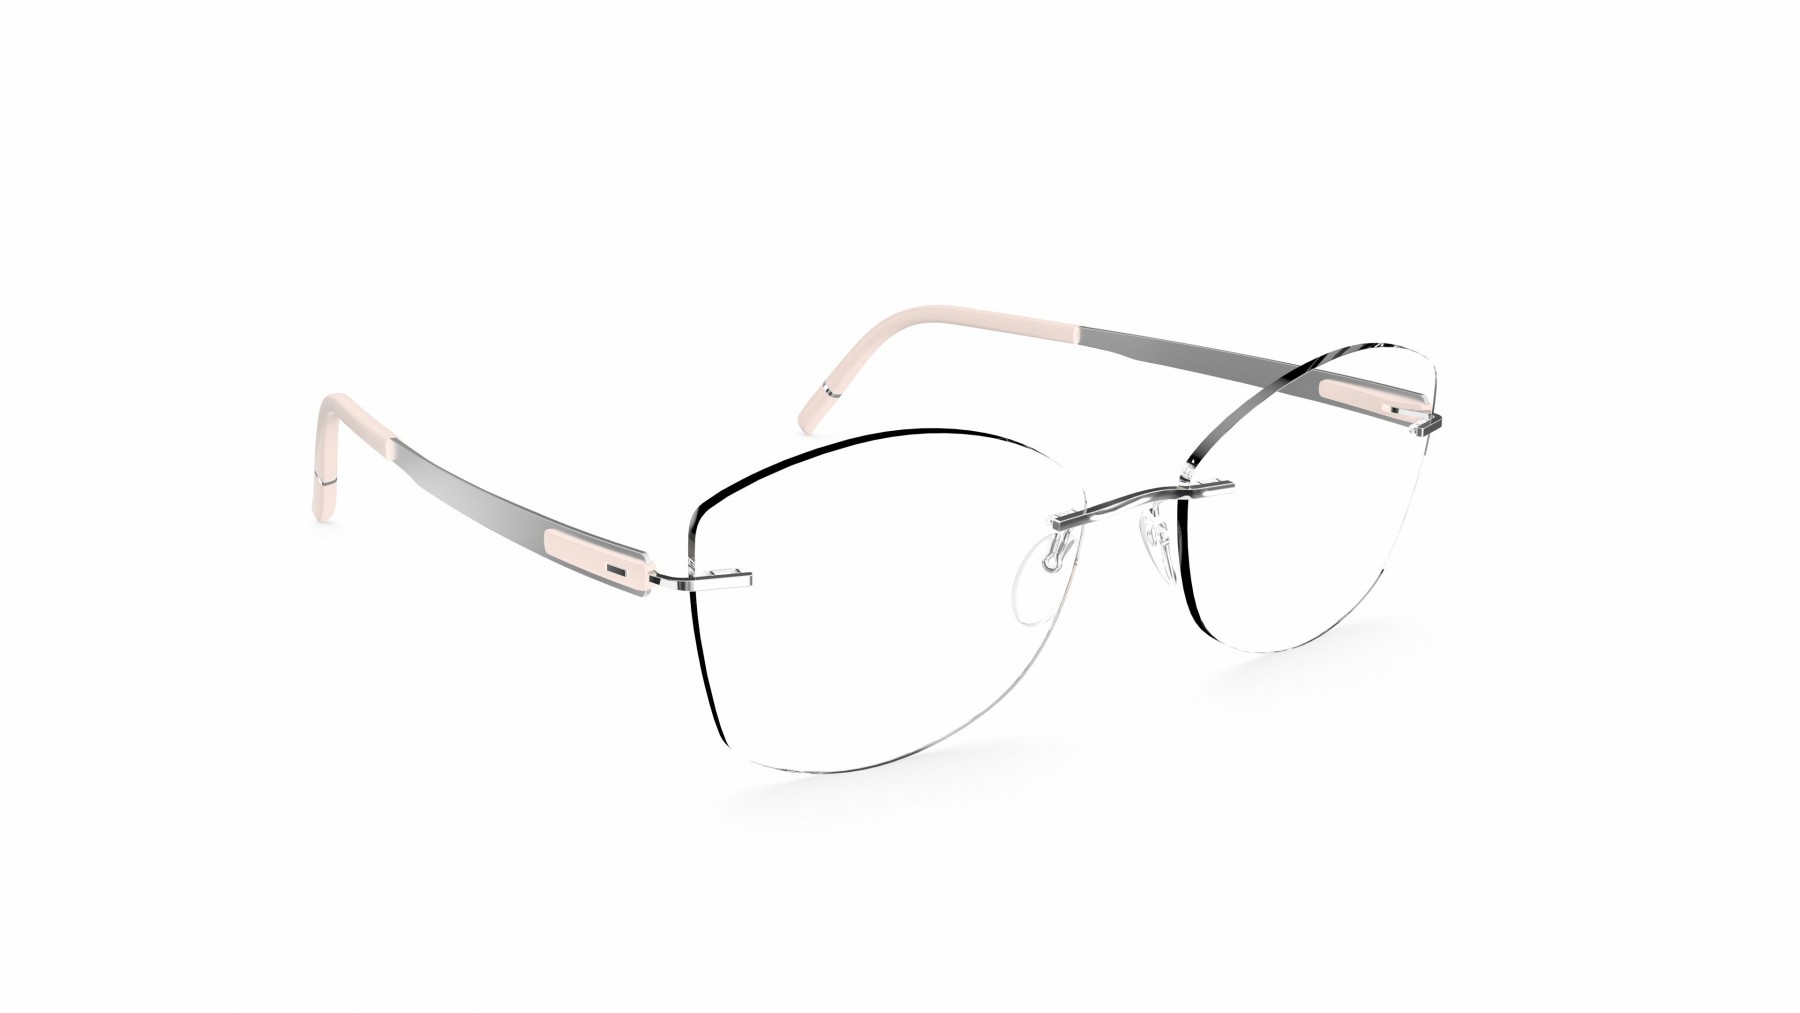 Silhouette 5555 KL 7000 - Oculos de Grau